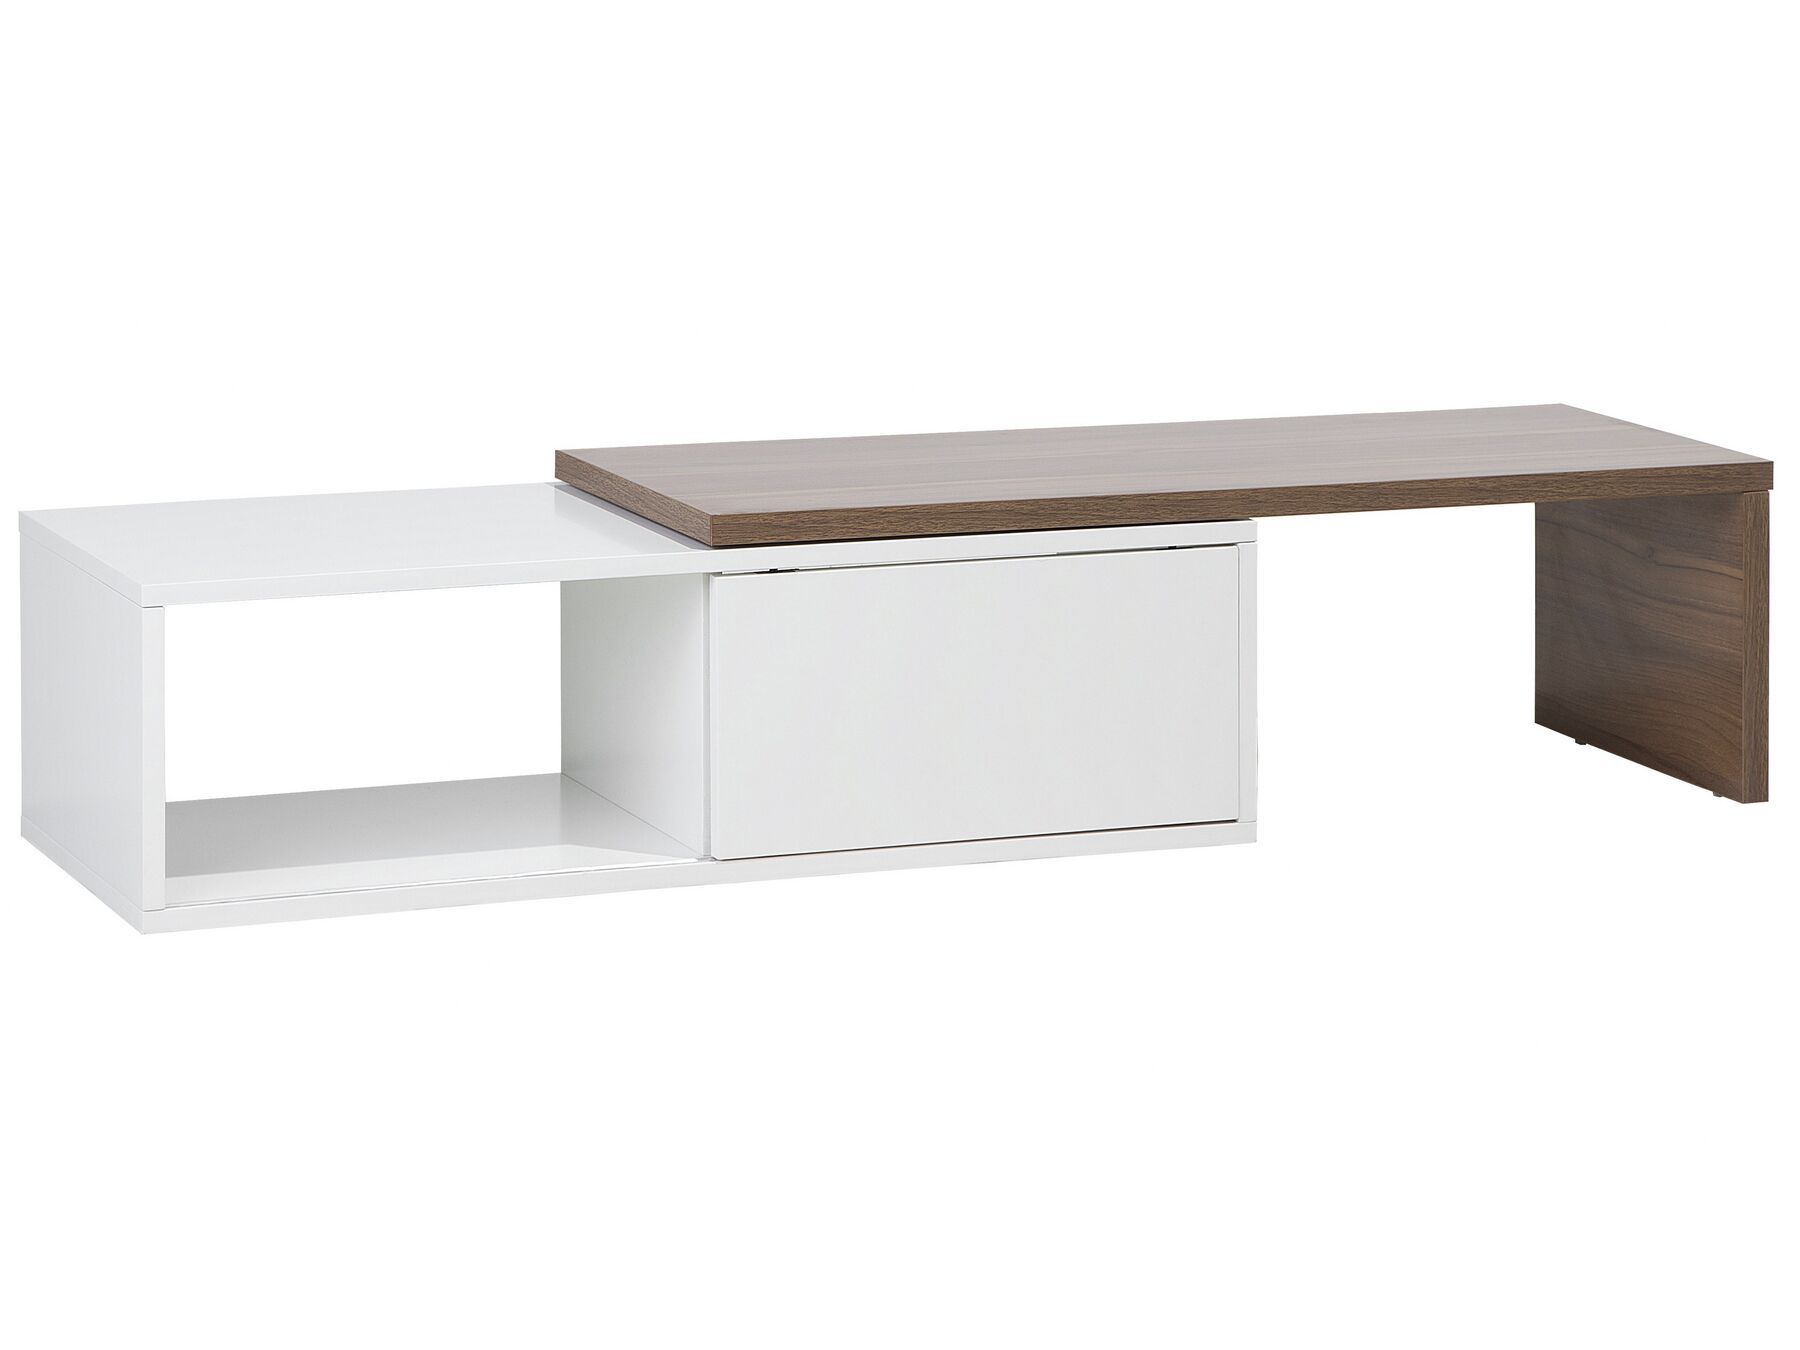 Lowboard TV Furniture White/Light Wood Hue Modern TV Base Cabinet -